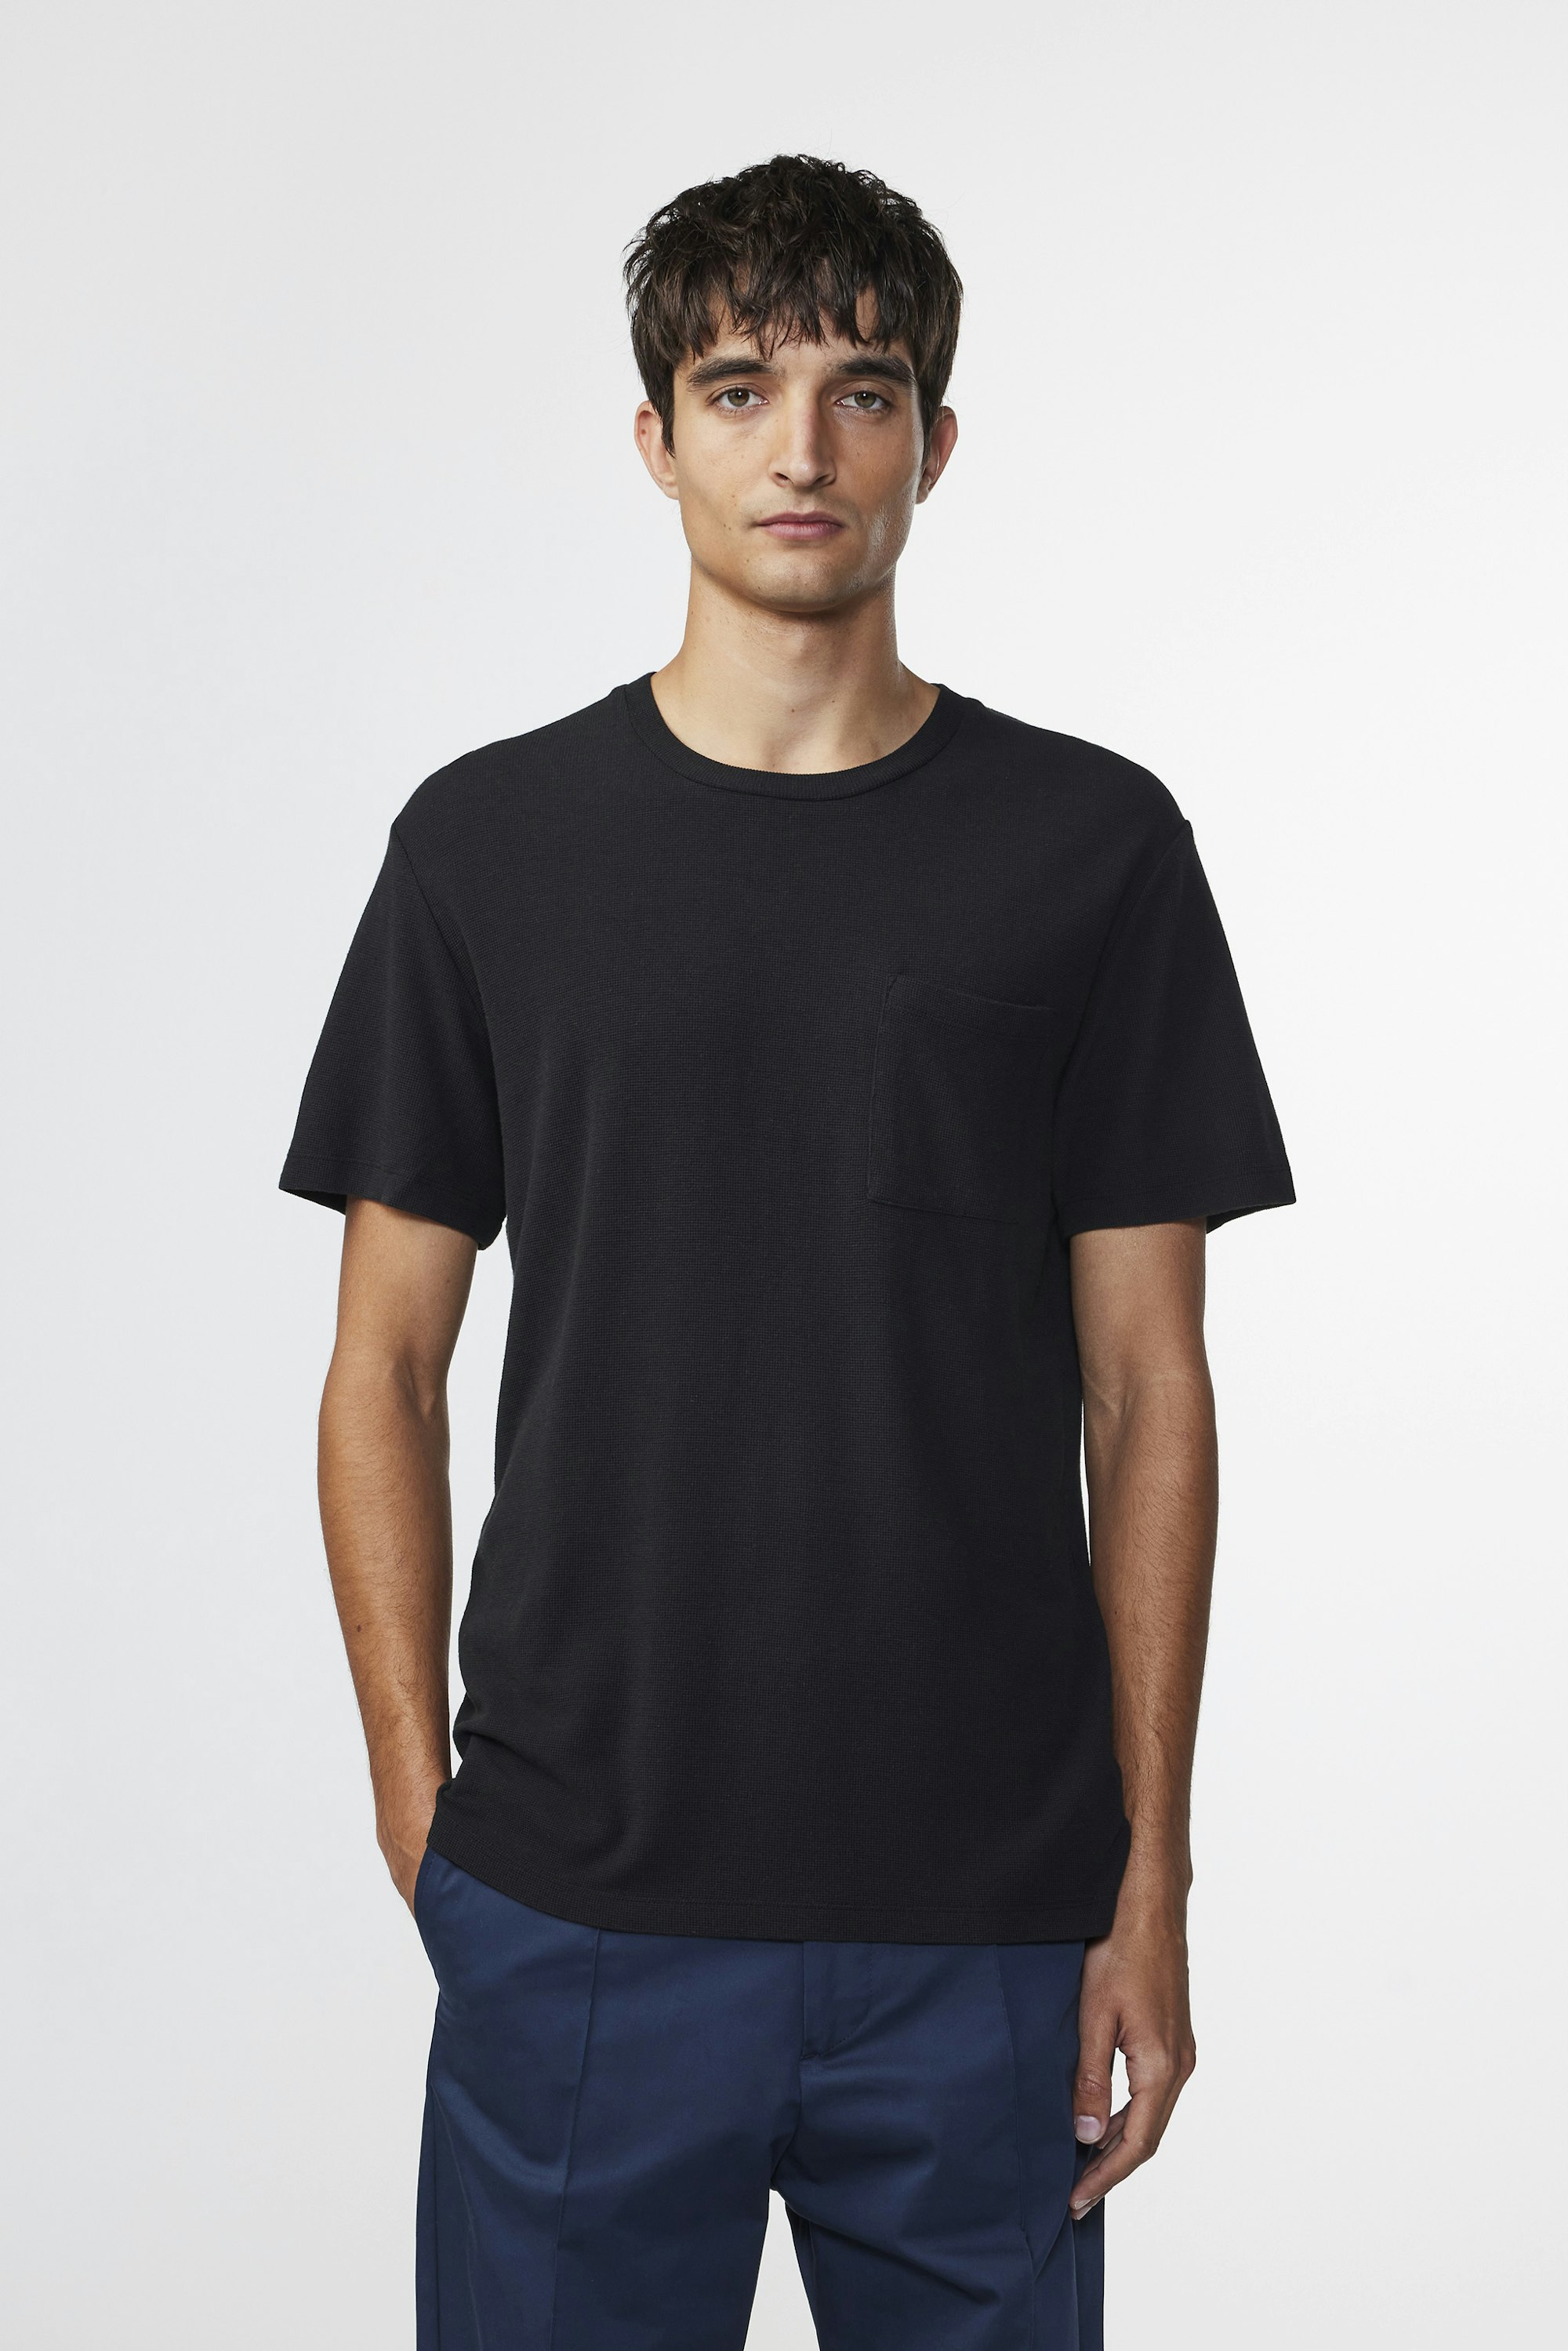 Black online t-shirt men\'s Clive at - 3323 - Buy